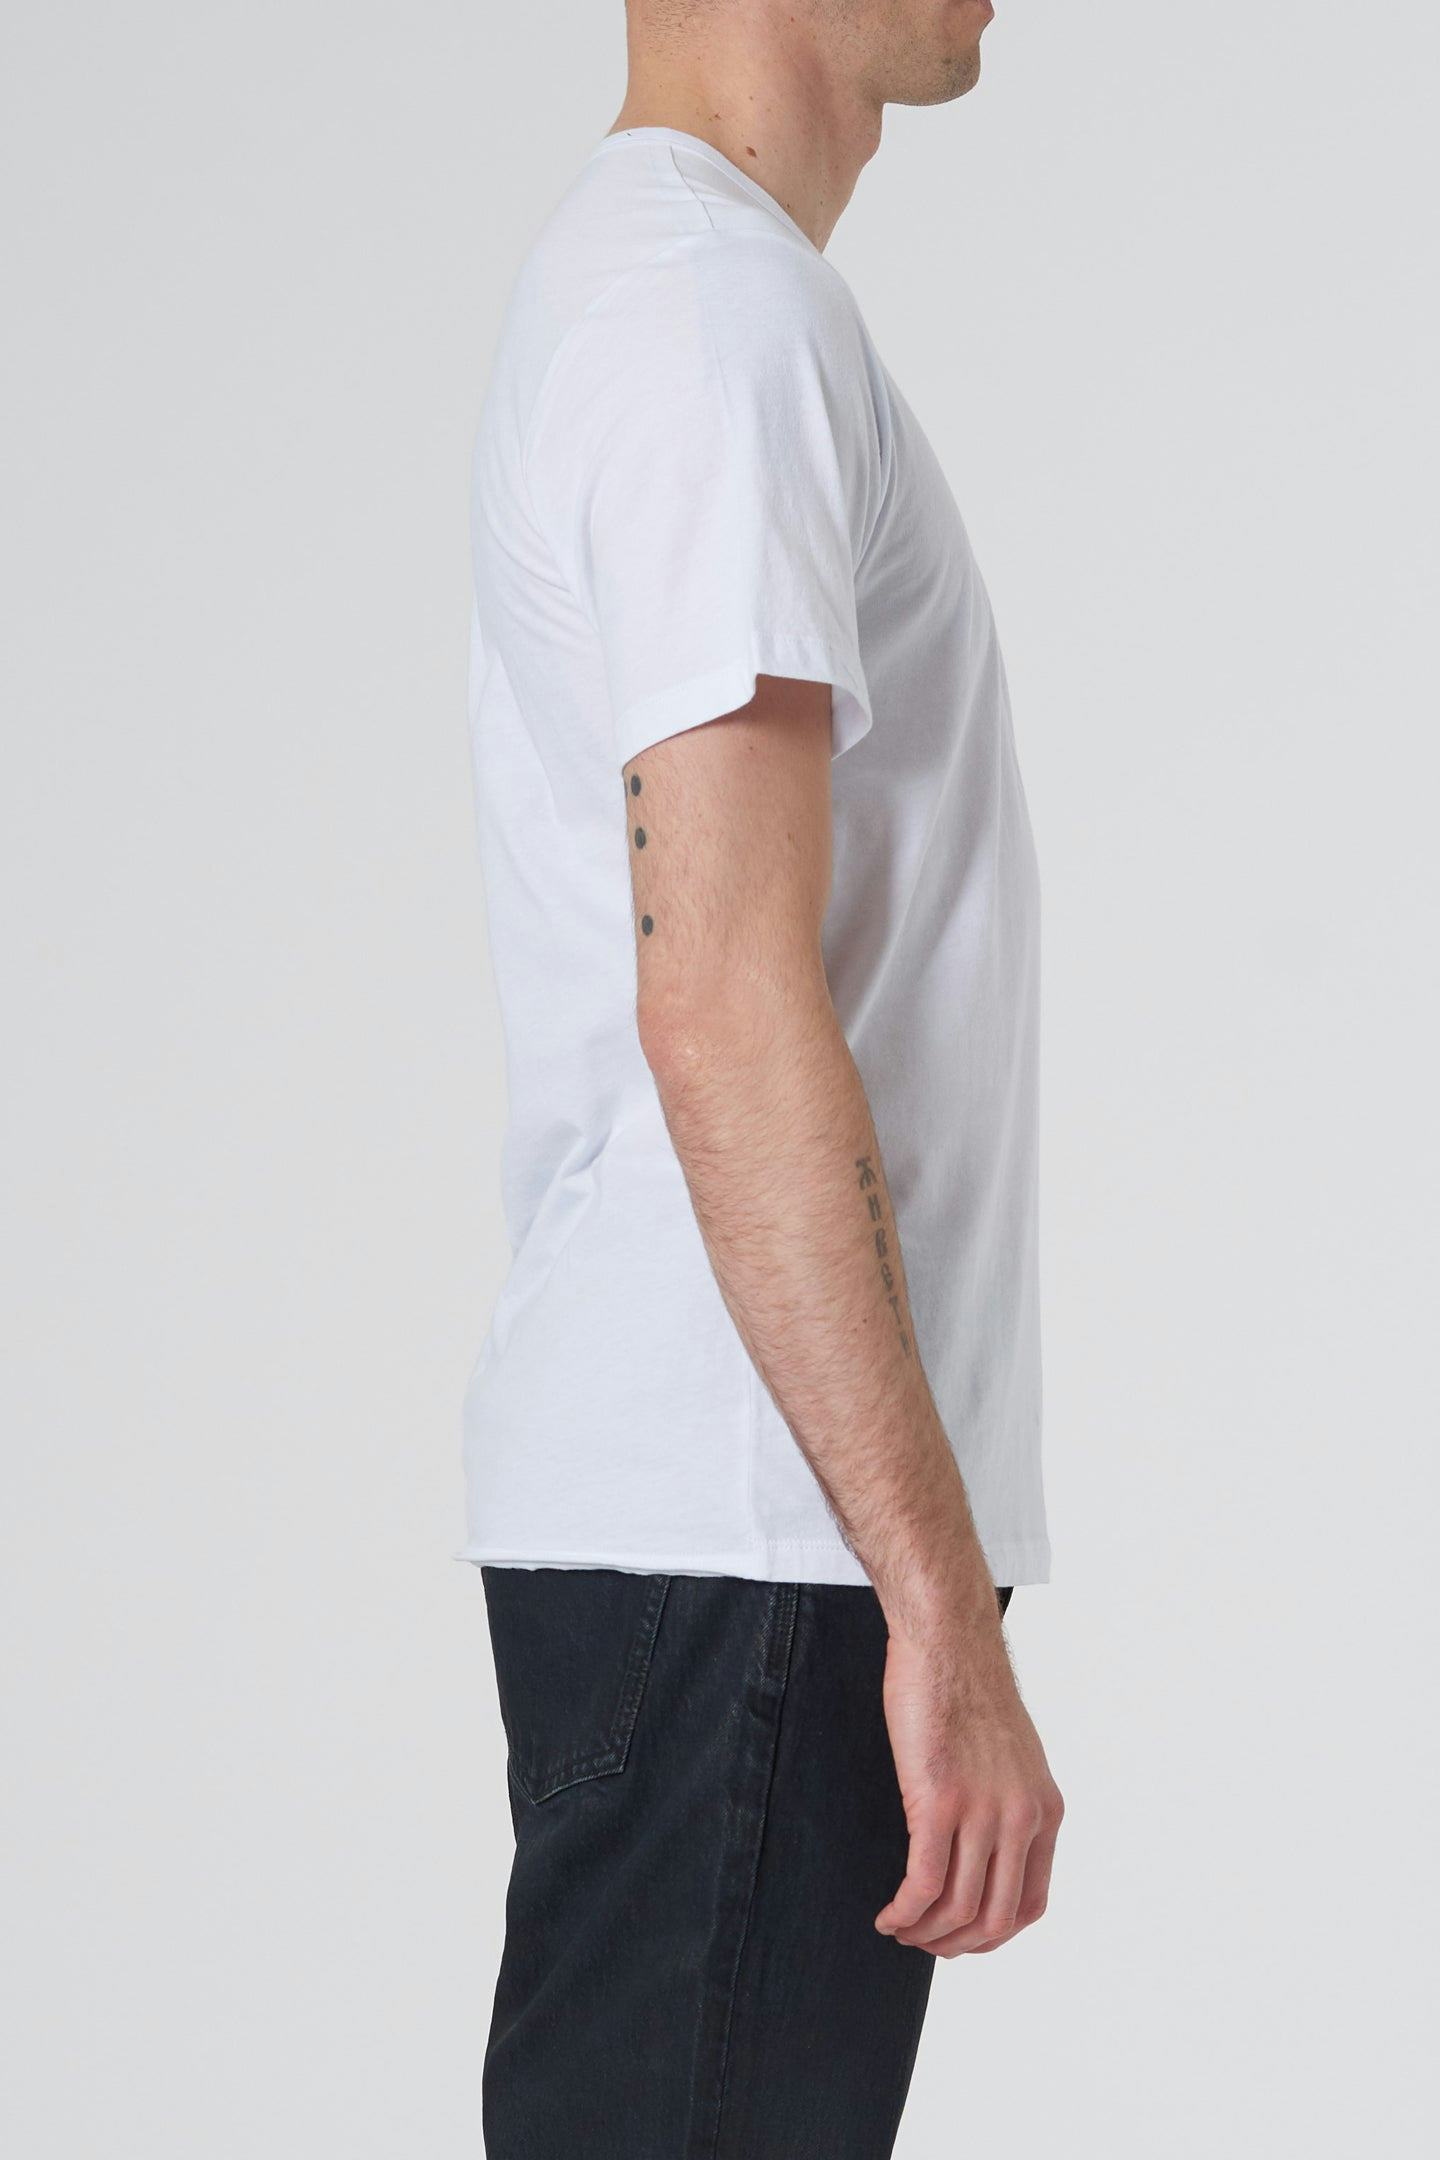 Layer Tee - White Neuw relaxed lightpurple mens-t-shirt 